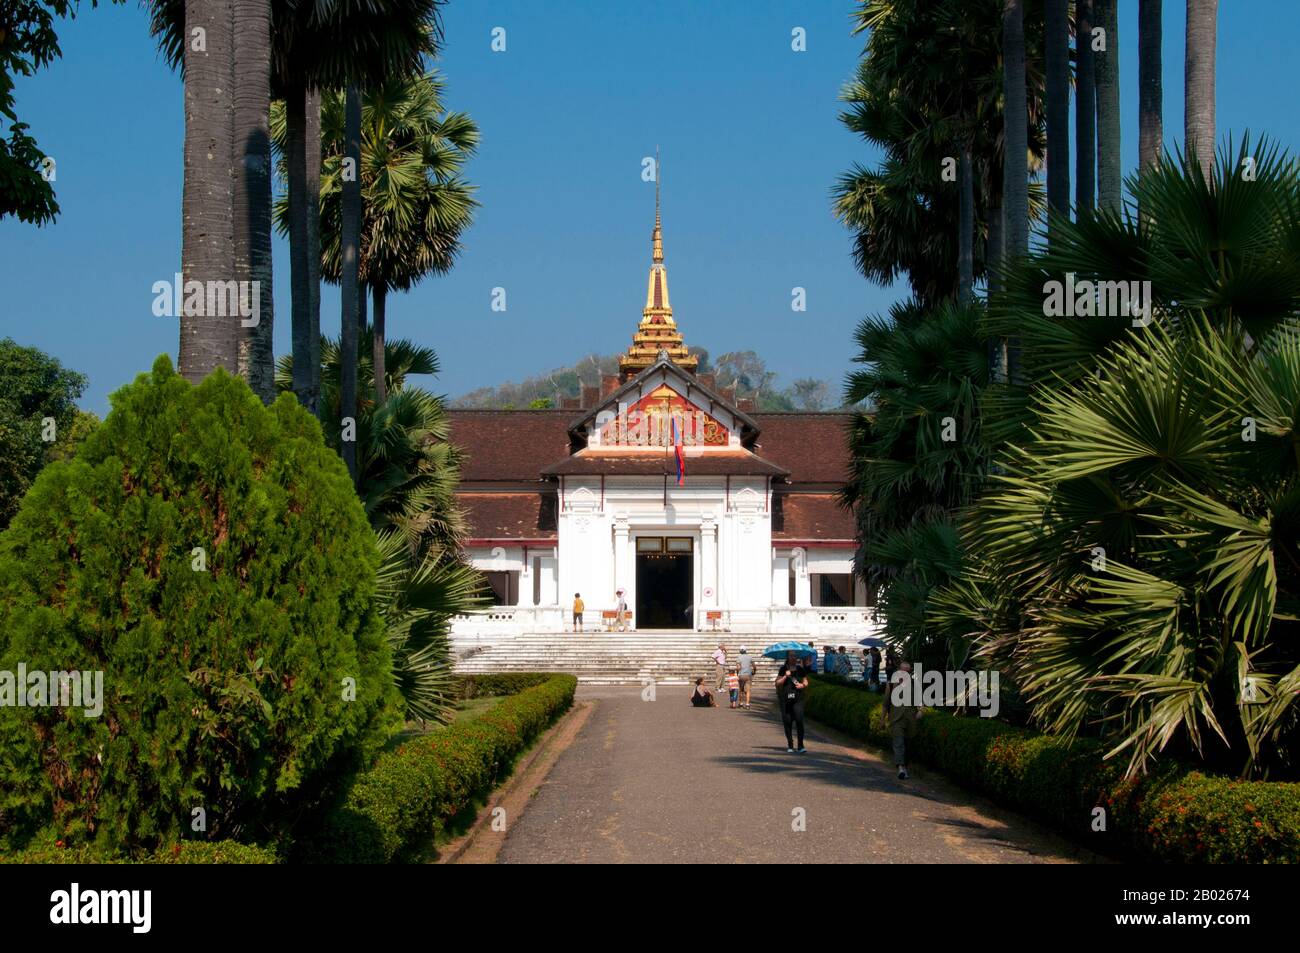 Il Palazzo reale (nome ufficiale Haw Kham) a Luang Prabang, Laos, fu costruito nel 1904 durante l'epoca coloniale francese per il re Sisavang Vong e la sua famiglia. Il sito per il palazzo è stato scelto in modo che i visitatori ufficiali di Luang Prabang possano sbarcare dai loro viaggi sul fiume direttamente sotto il palazzo e essere ricevuti lì. Dopo la morte del re Sisavang Vong, il principe ereditario Savang Vatthana e la sua famiglia furono gli ultimi ad occupare i terreni. Nel 1975, la monarchia fu abbattutata dai comunisti e la famiglia reale fu portata in campi di rieducazione. Il palazzo fu poi convertito in nazione Foto Stock